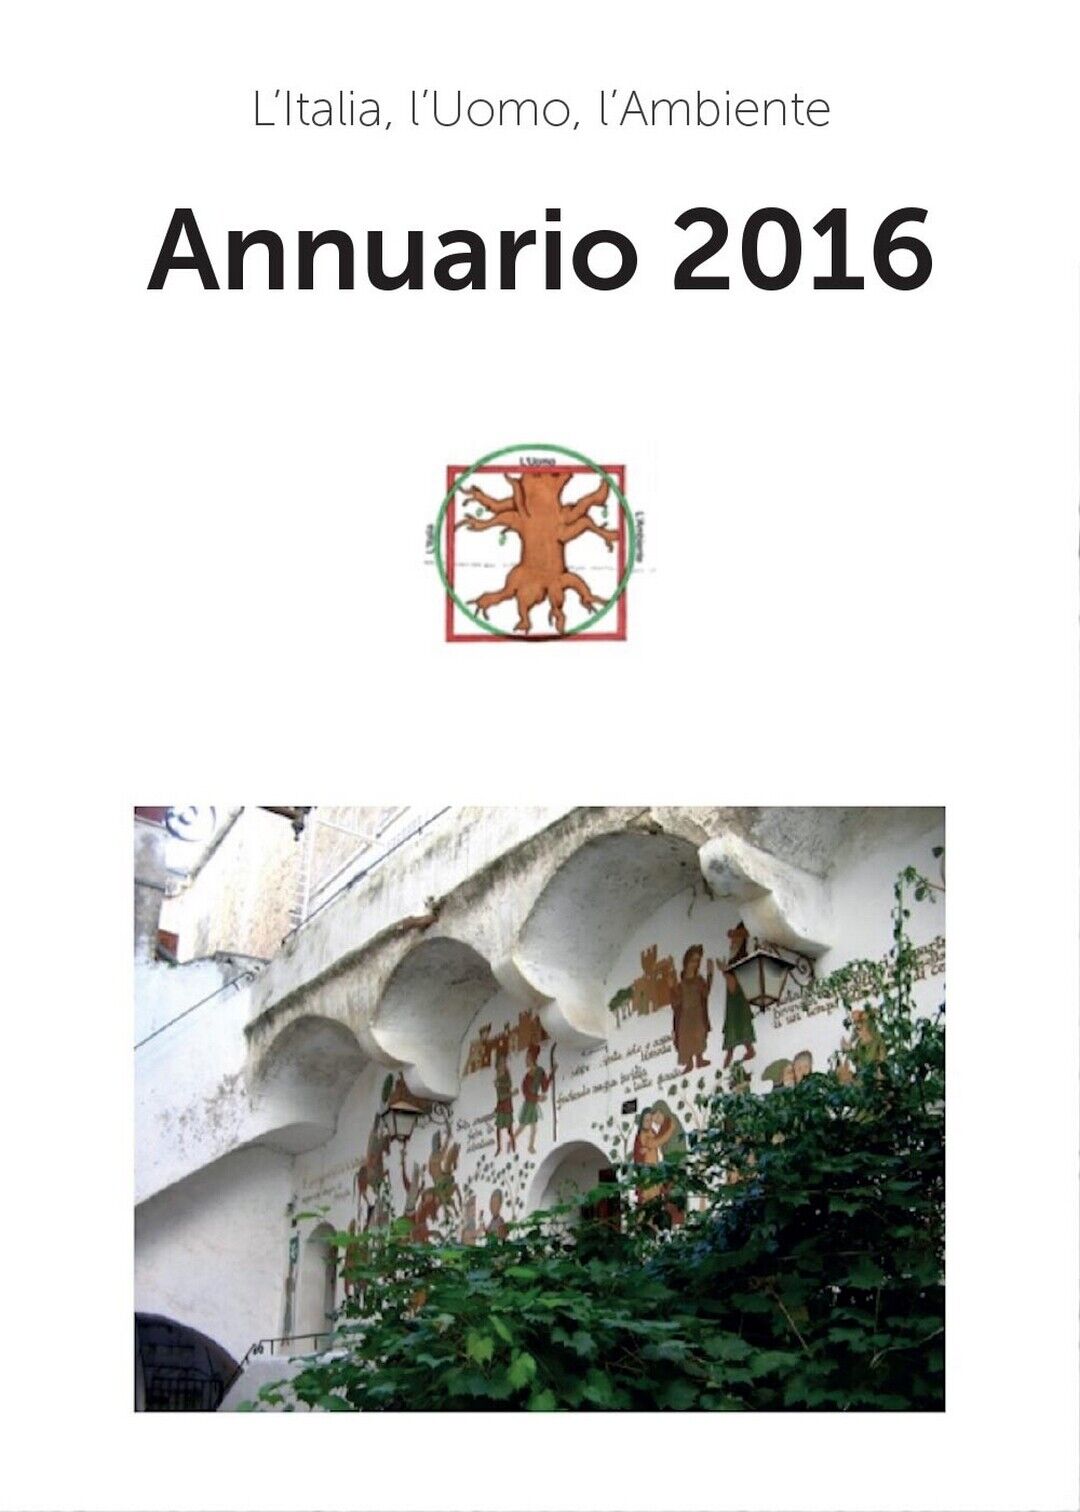 Annuario 2016  di L'Italia, L'Uomo, L'Ambiente,  2017,  Youcanprint